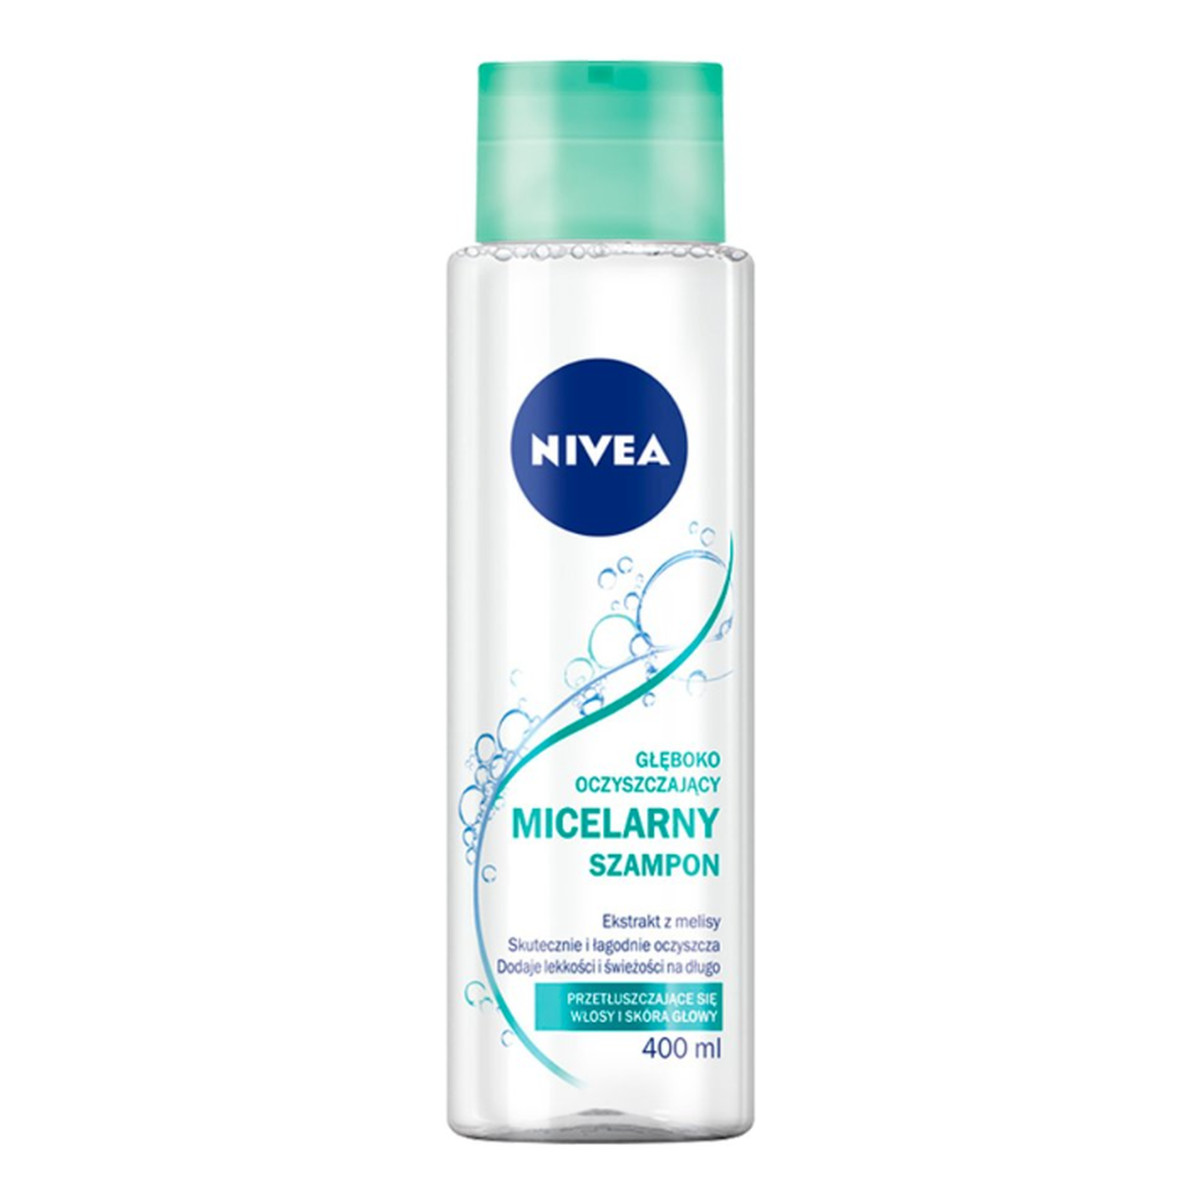 nivea szampon micelarny oczyszczajacy ceneo